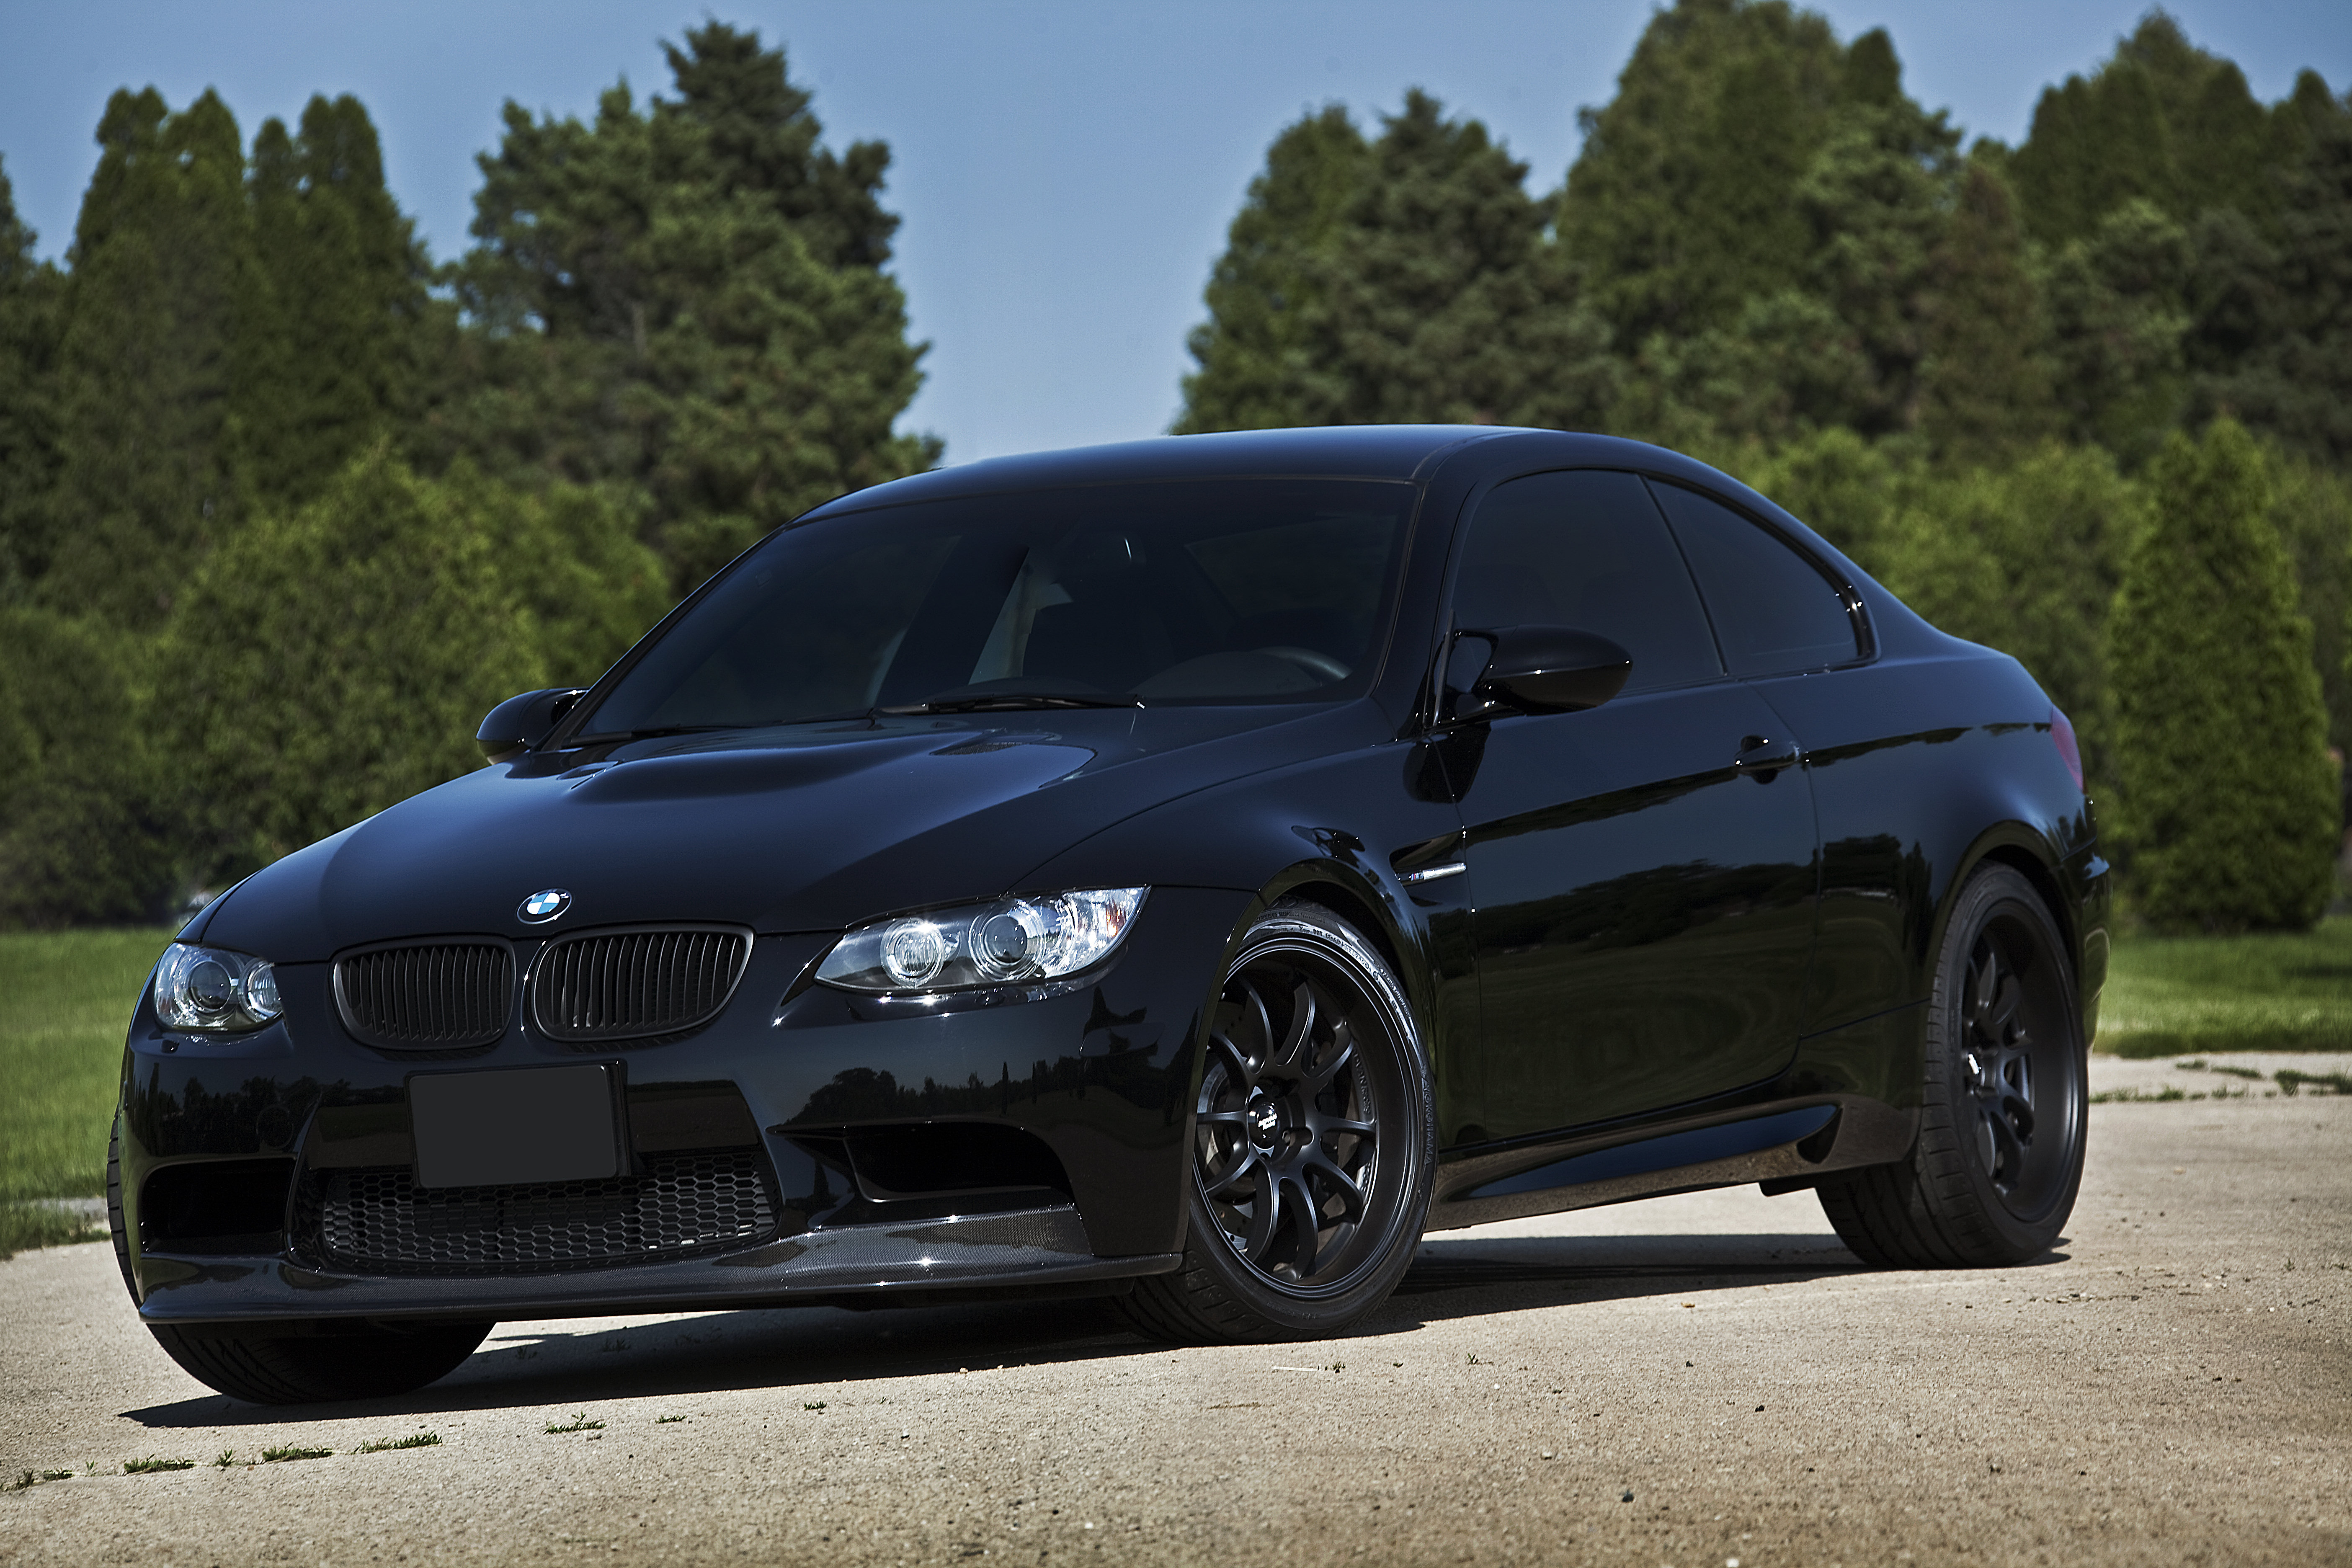 Черная машина перед. BMW m3 черная. BMW m3 Coupe Black. BMW m5 Black. BMW e92 Black.